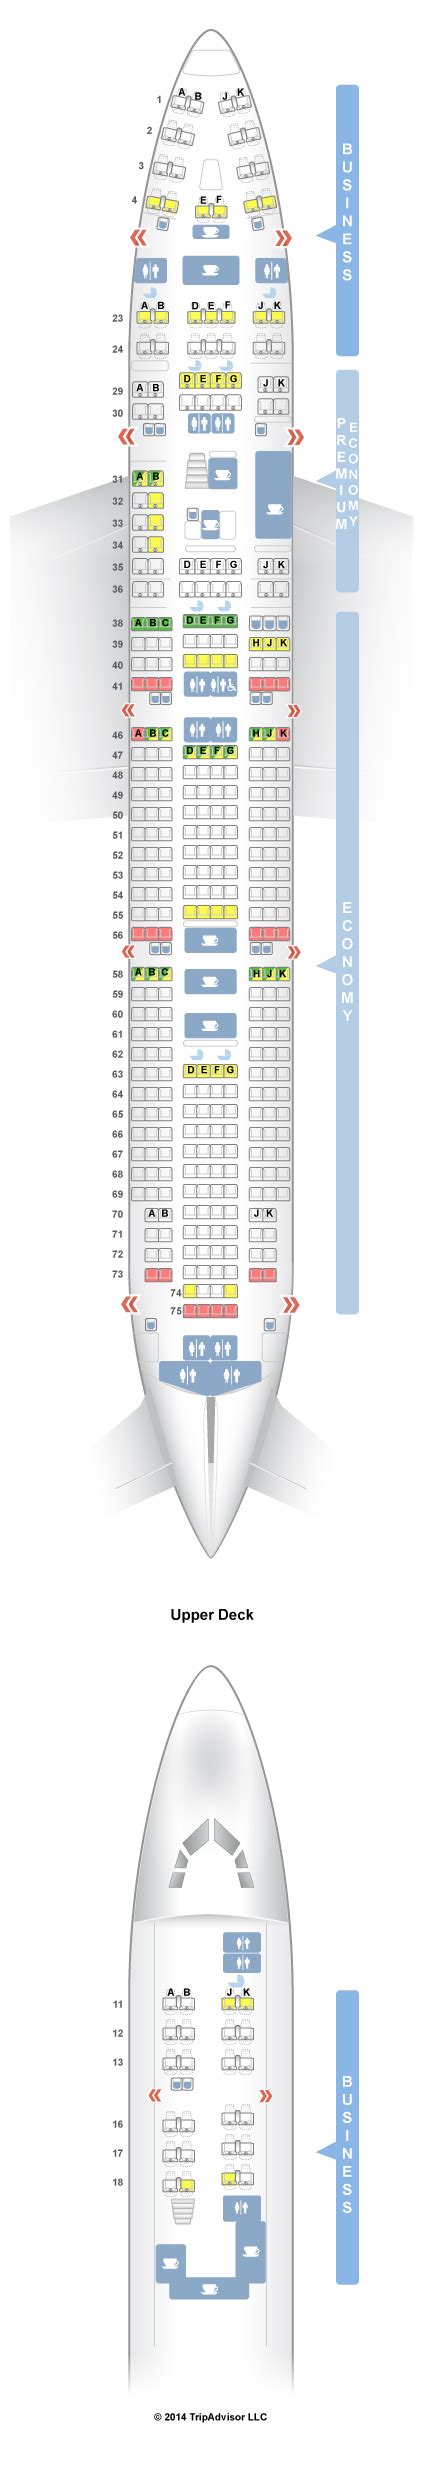 Boeing Seat Map Qantas Solo Para Adultos En Andalucia